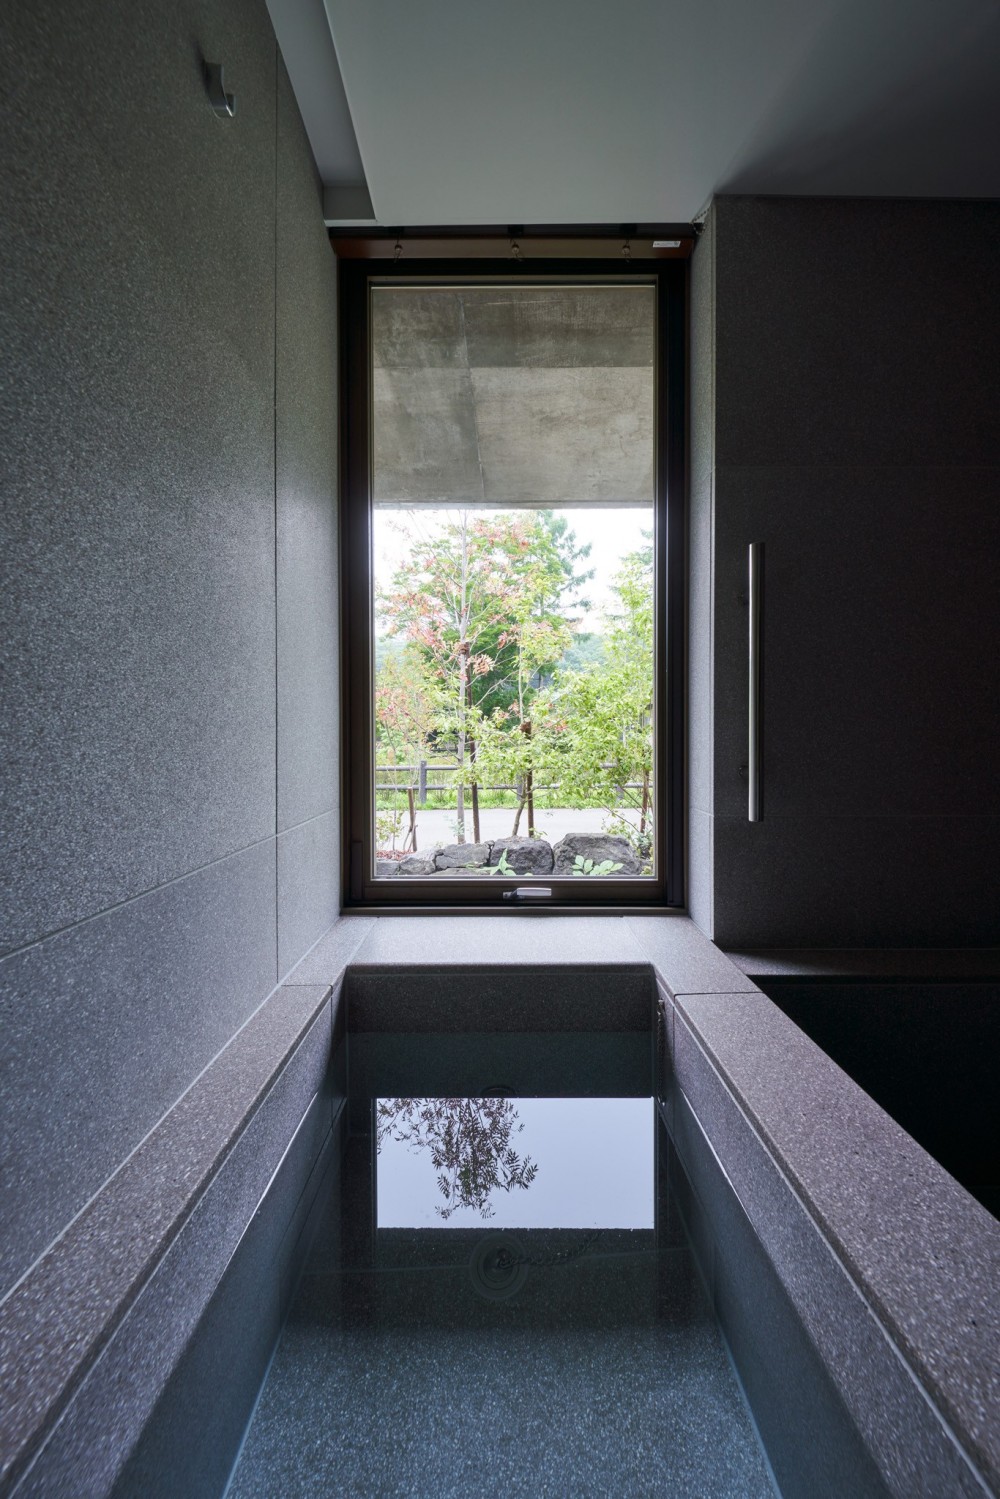 軽井沢のセカンドライフハウス (軽井沢のセカンドライフハウス PHOTO by Masaya Yoshimura, Copist)